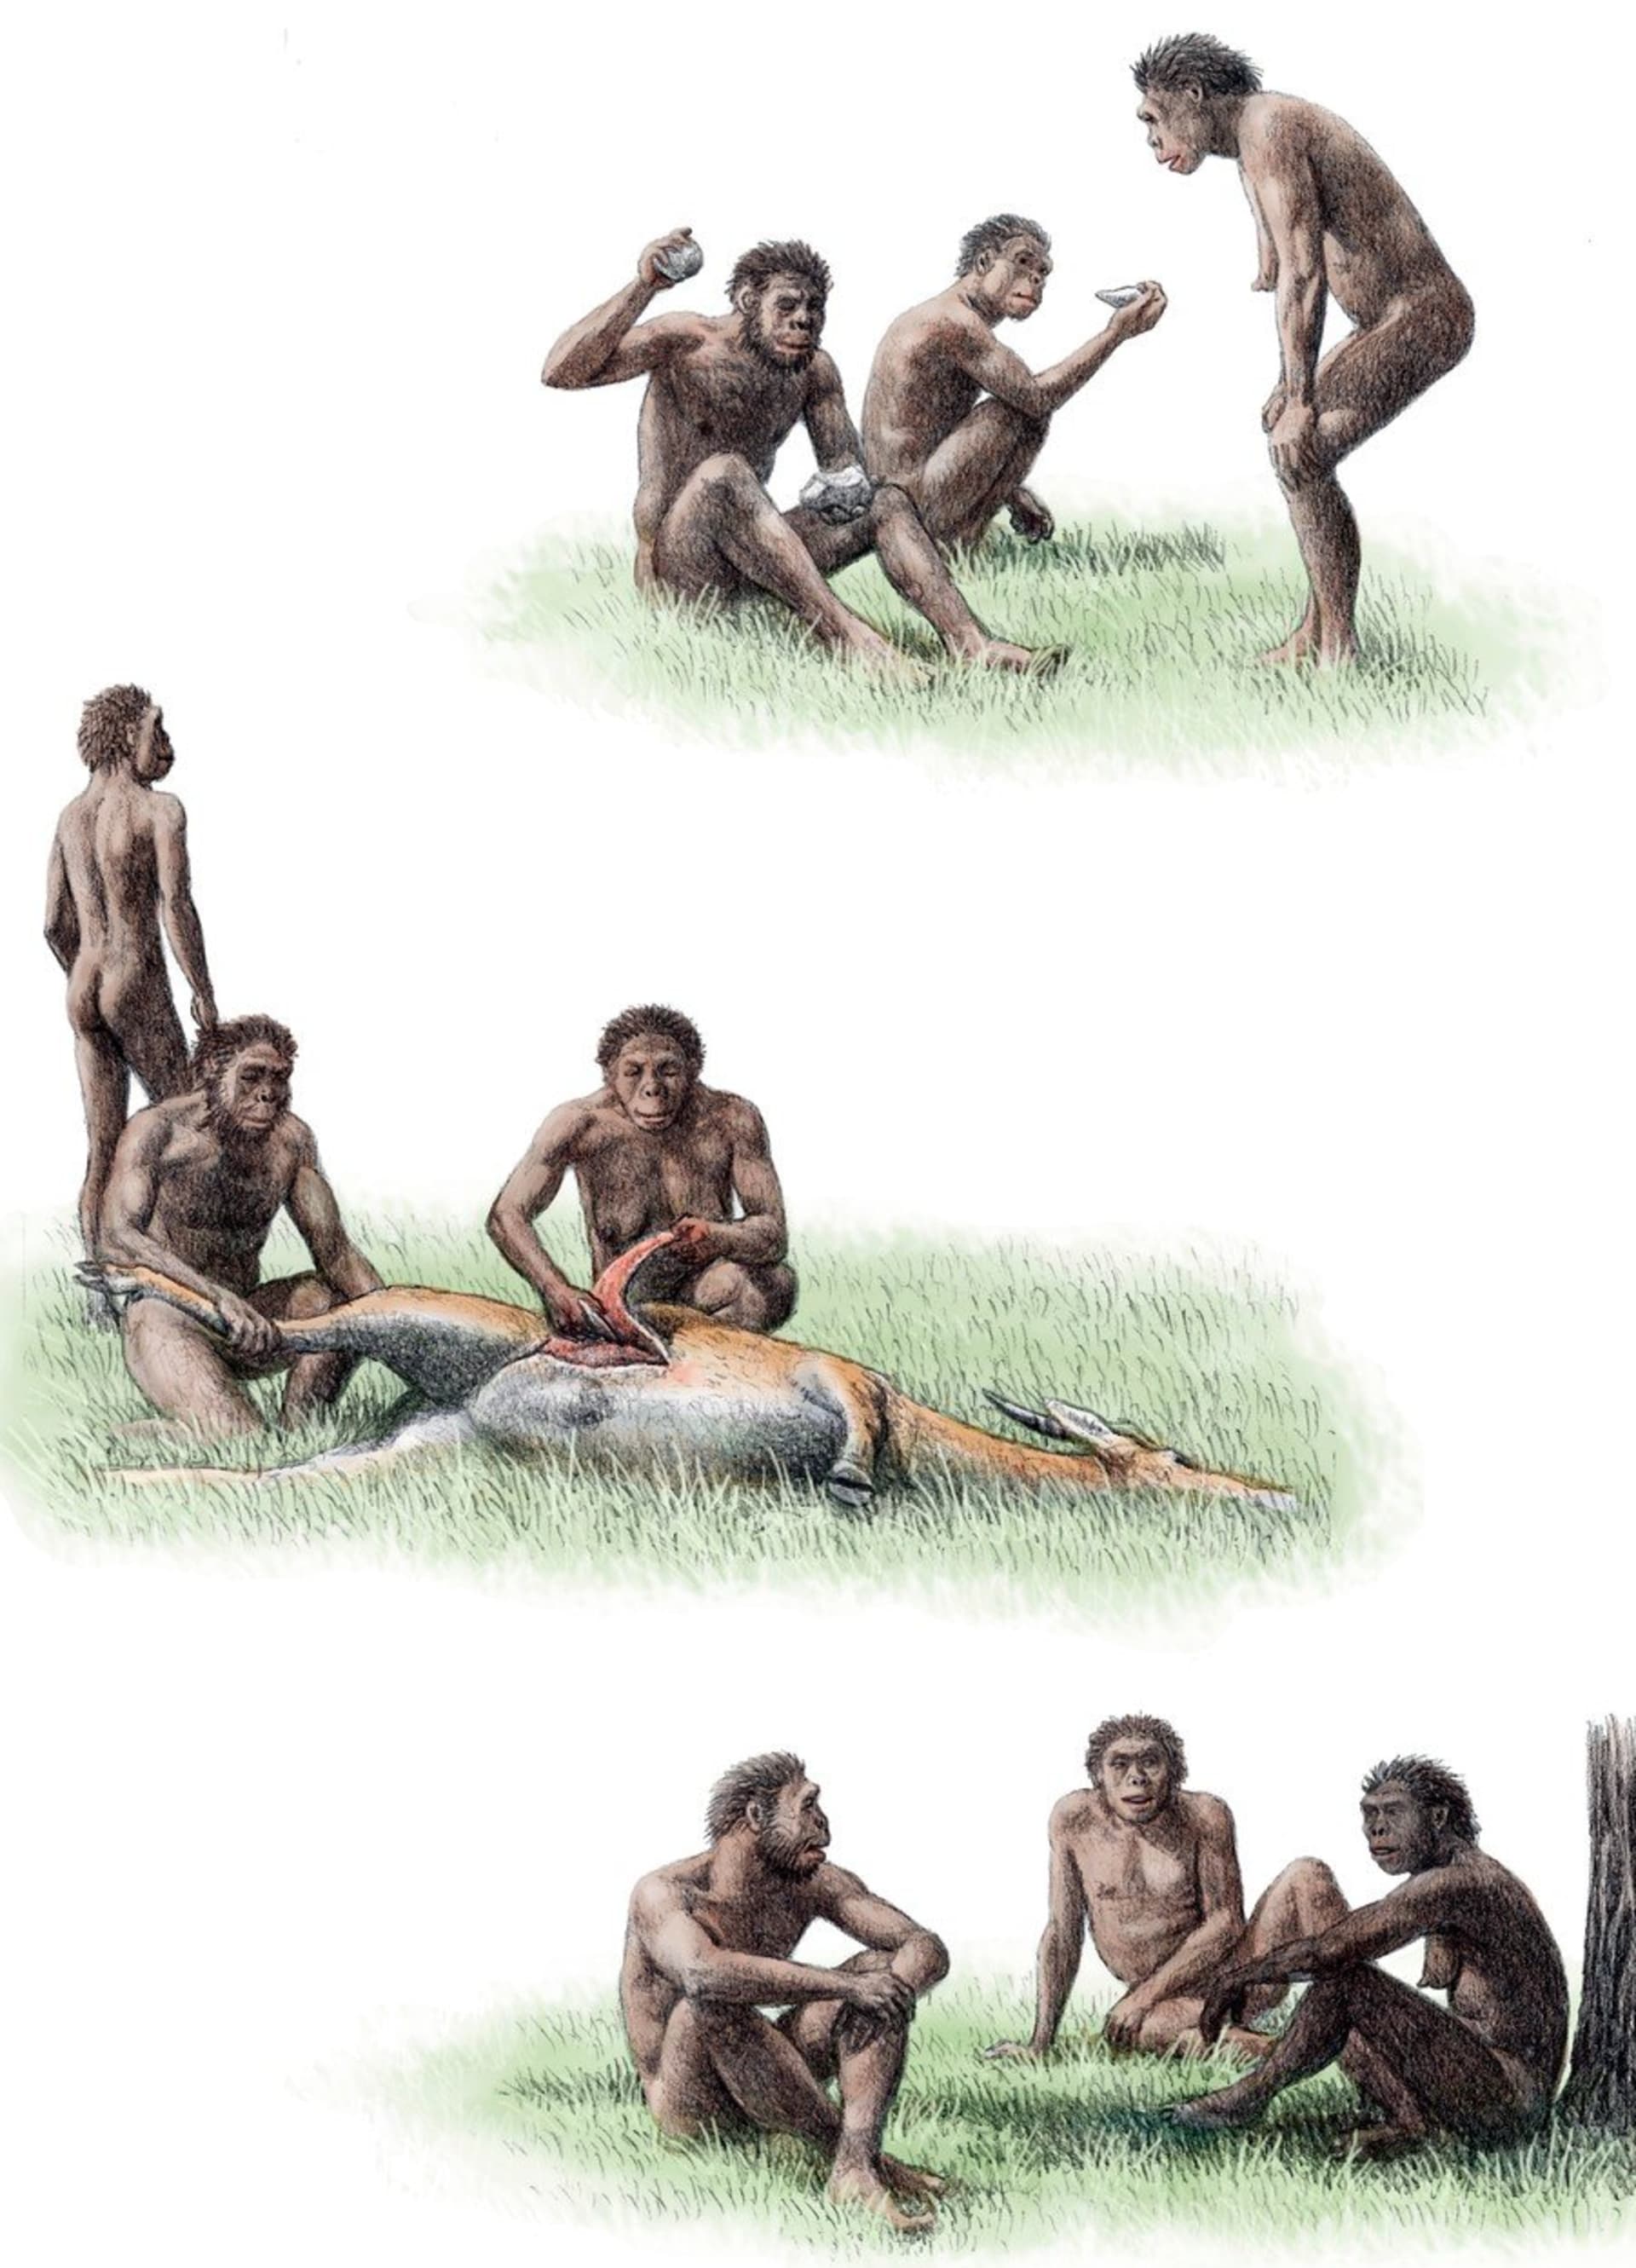 Předávání dovedností odlišilo člověka od zvířat - tlupa příslušníků Homo ergaster